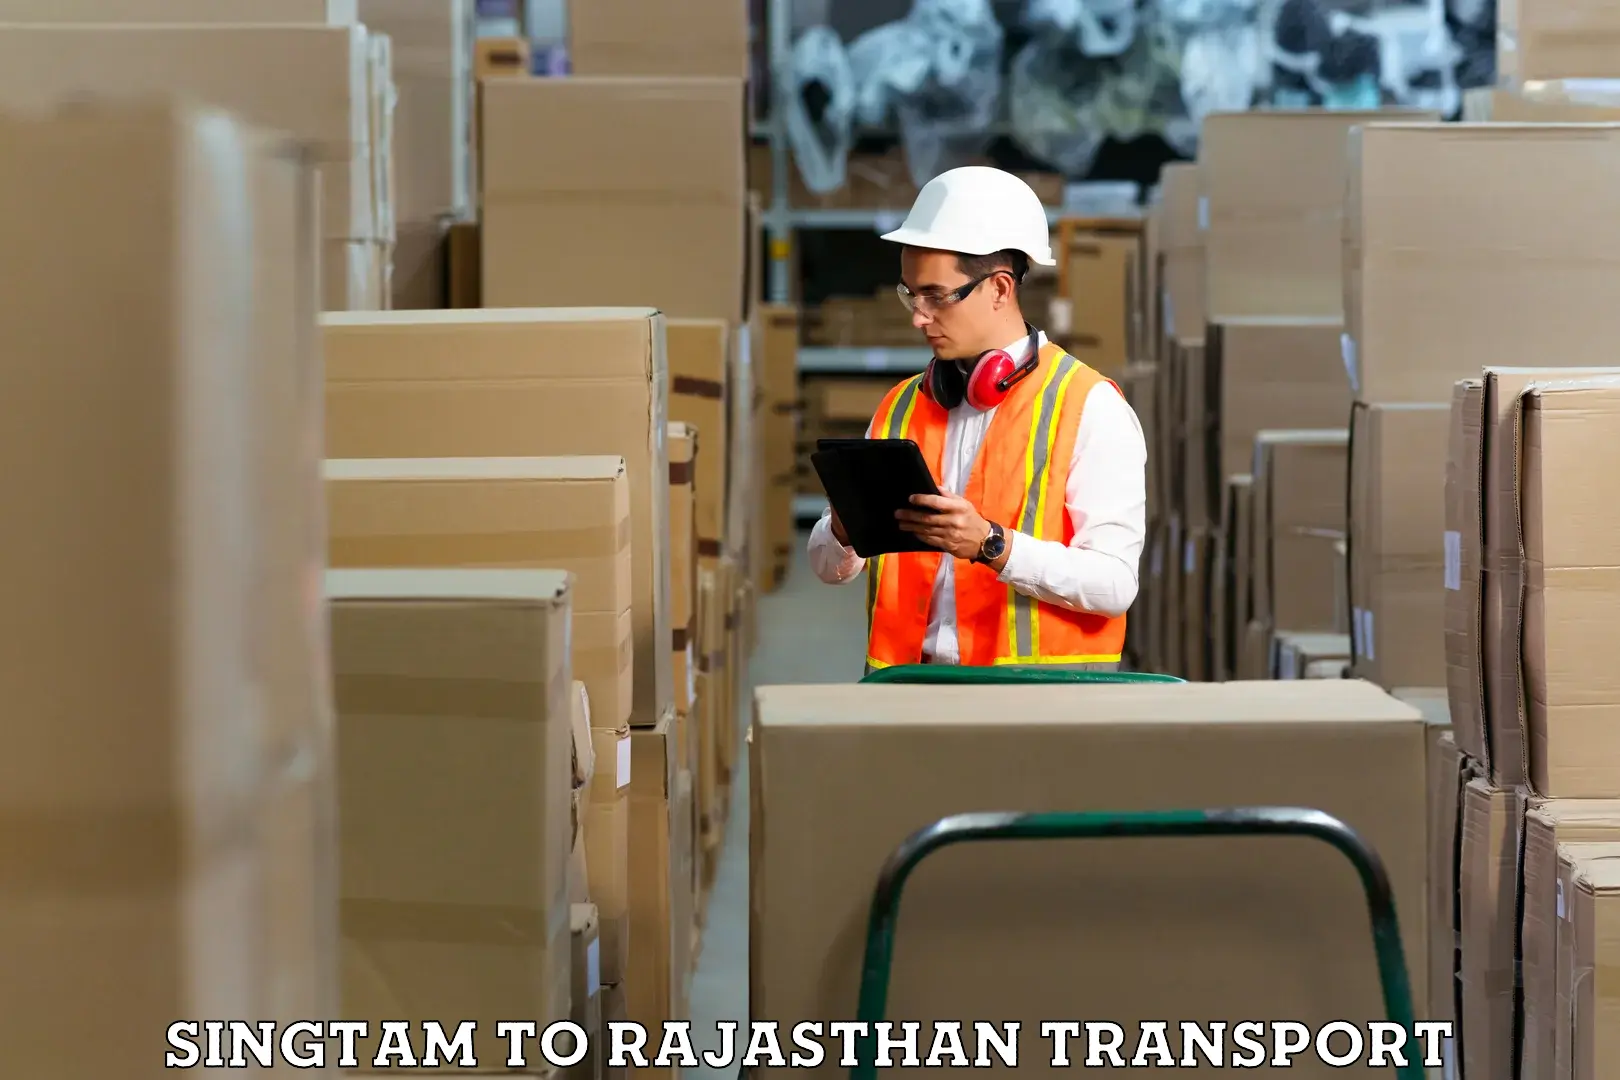 Bike shipping service Singtam to Rajasthan